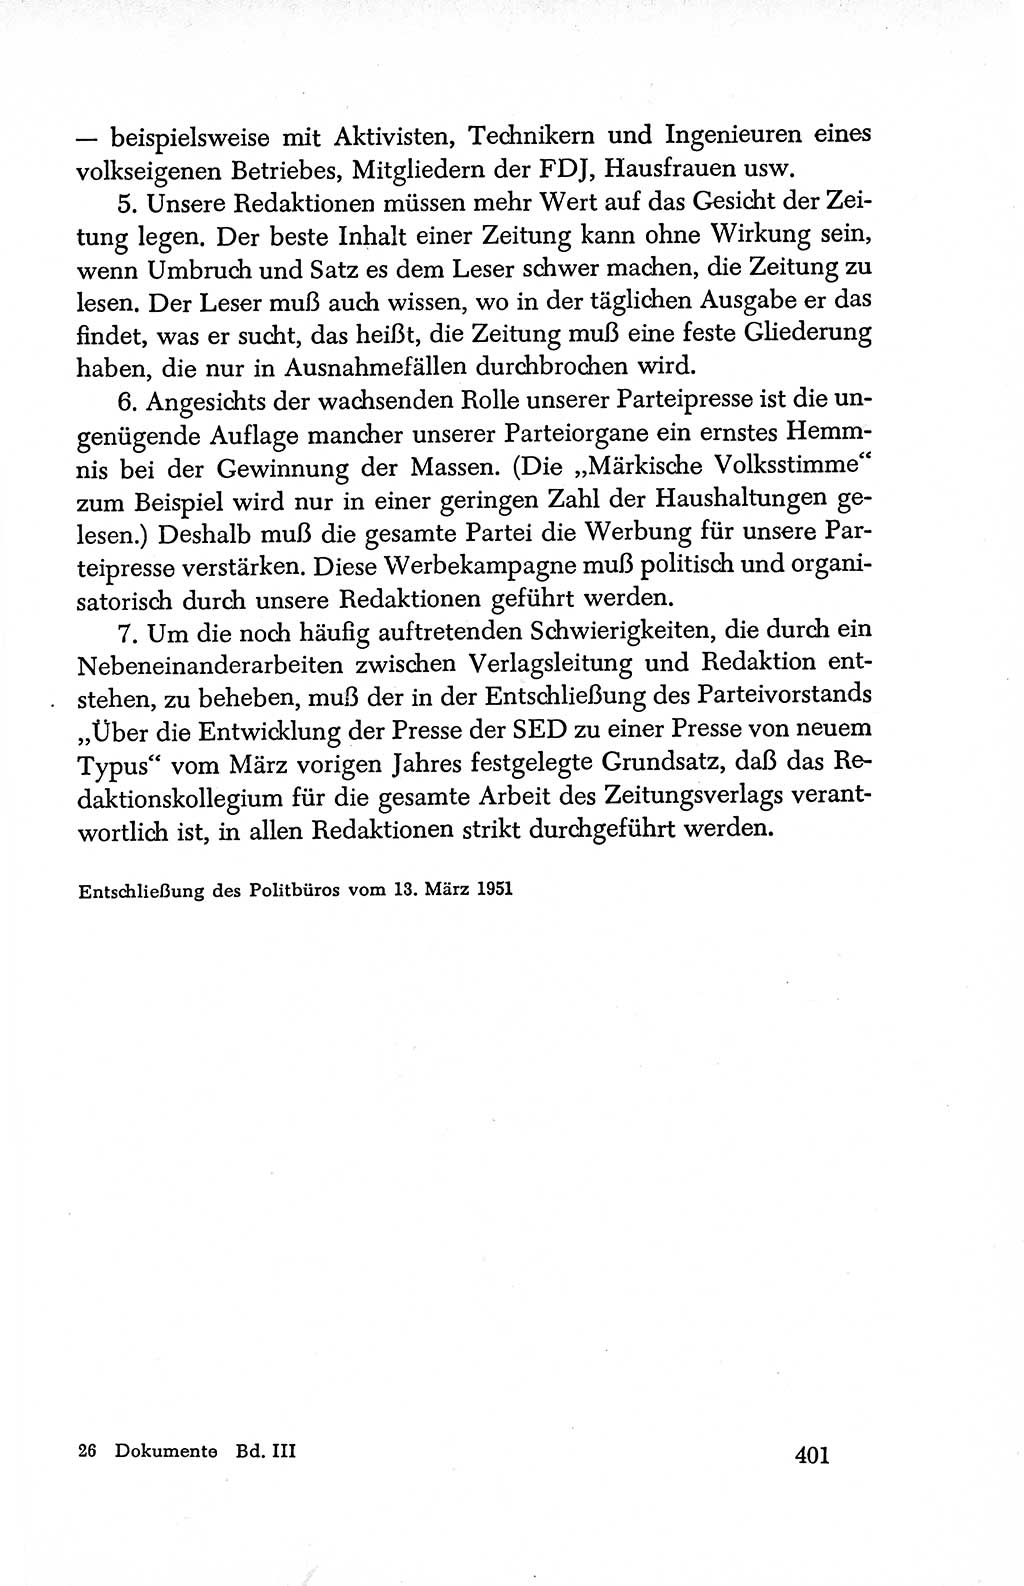 Dokumente der Sozialistischen Einheitspartei Deutschlands (SED) [Deutsche Demokratische Republik (DDR)] 1950-1952, Seite 401 (Dok. SED DDR 1950-1952, S. 401)